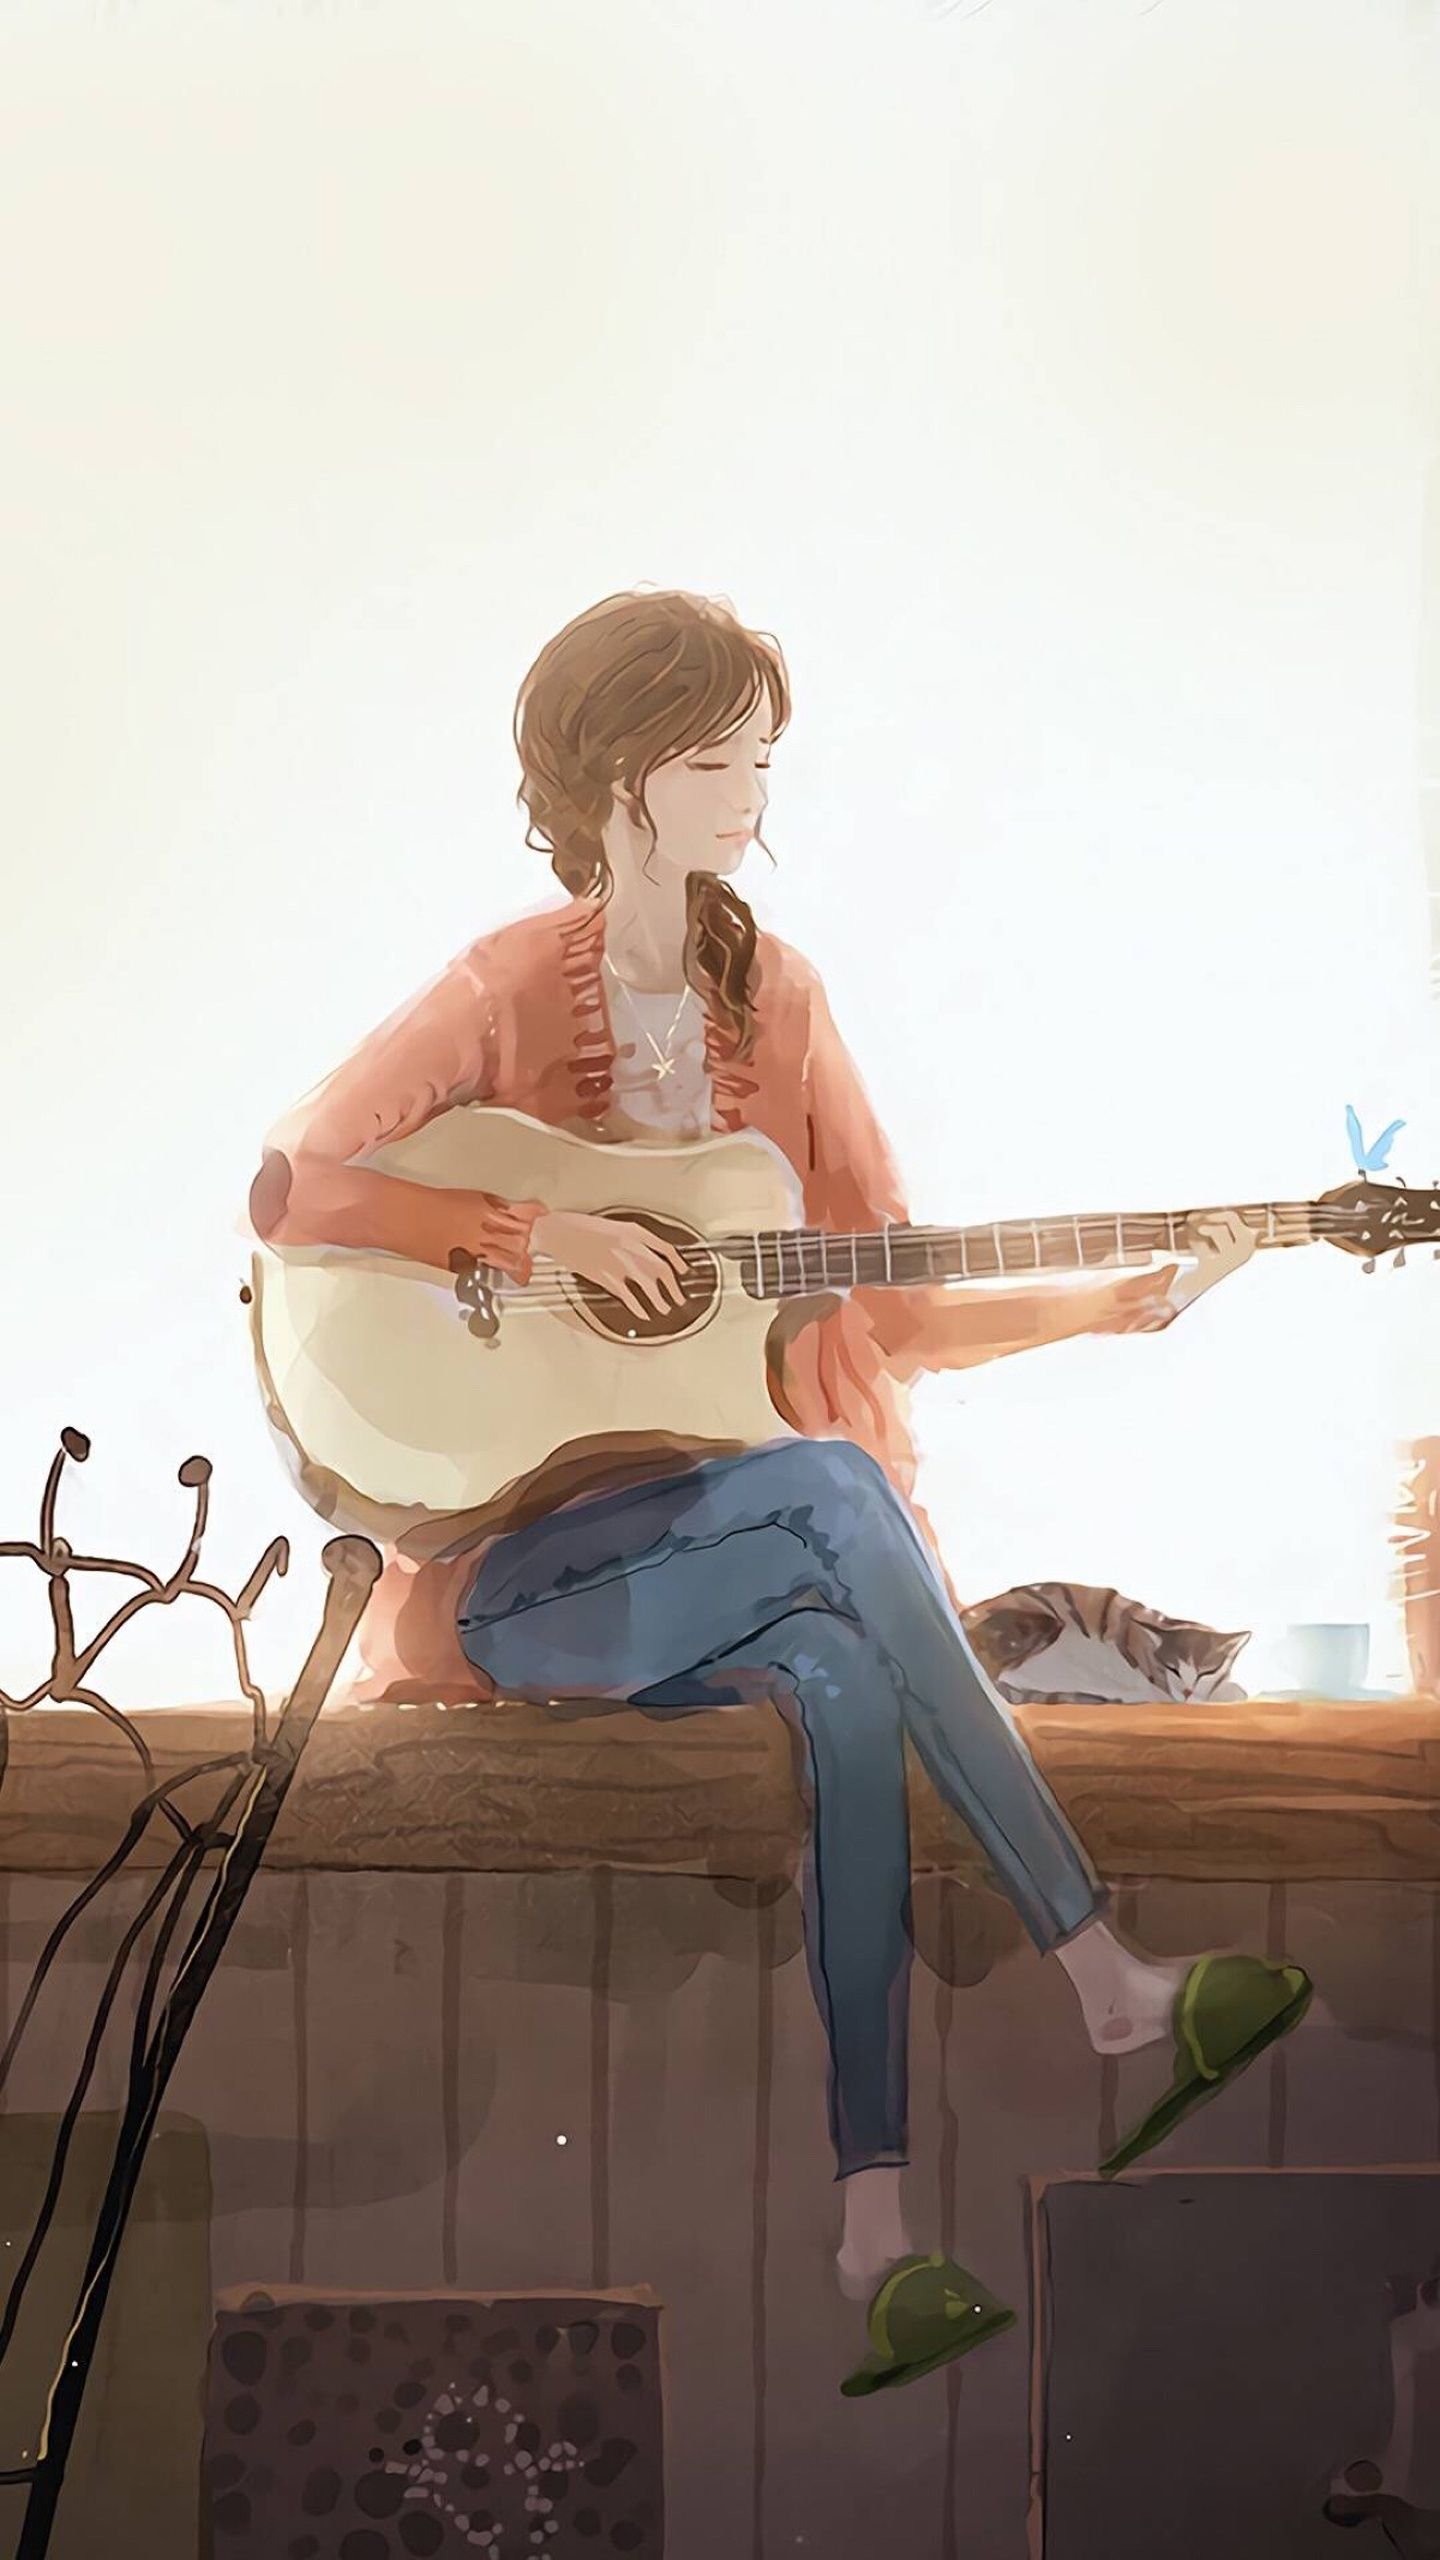 Anime Girl Playing Guitar